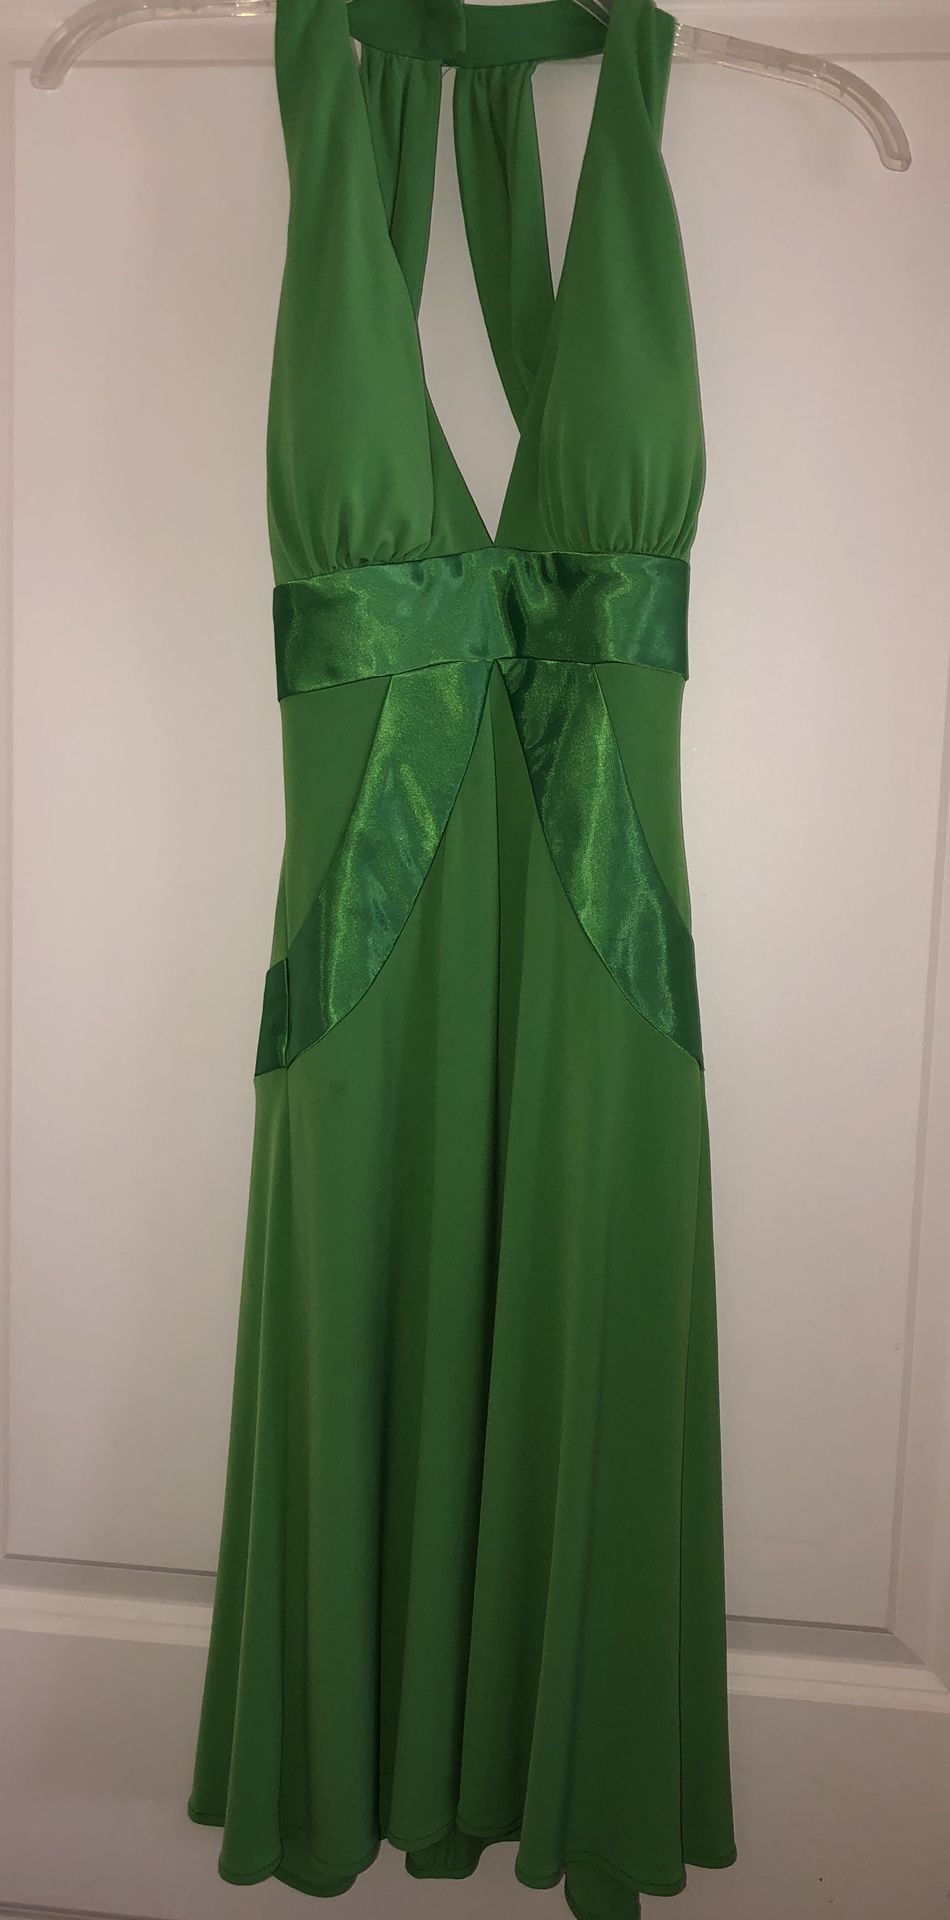 Little green dress